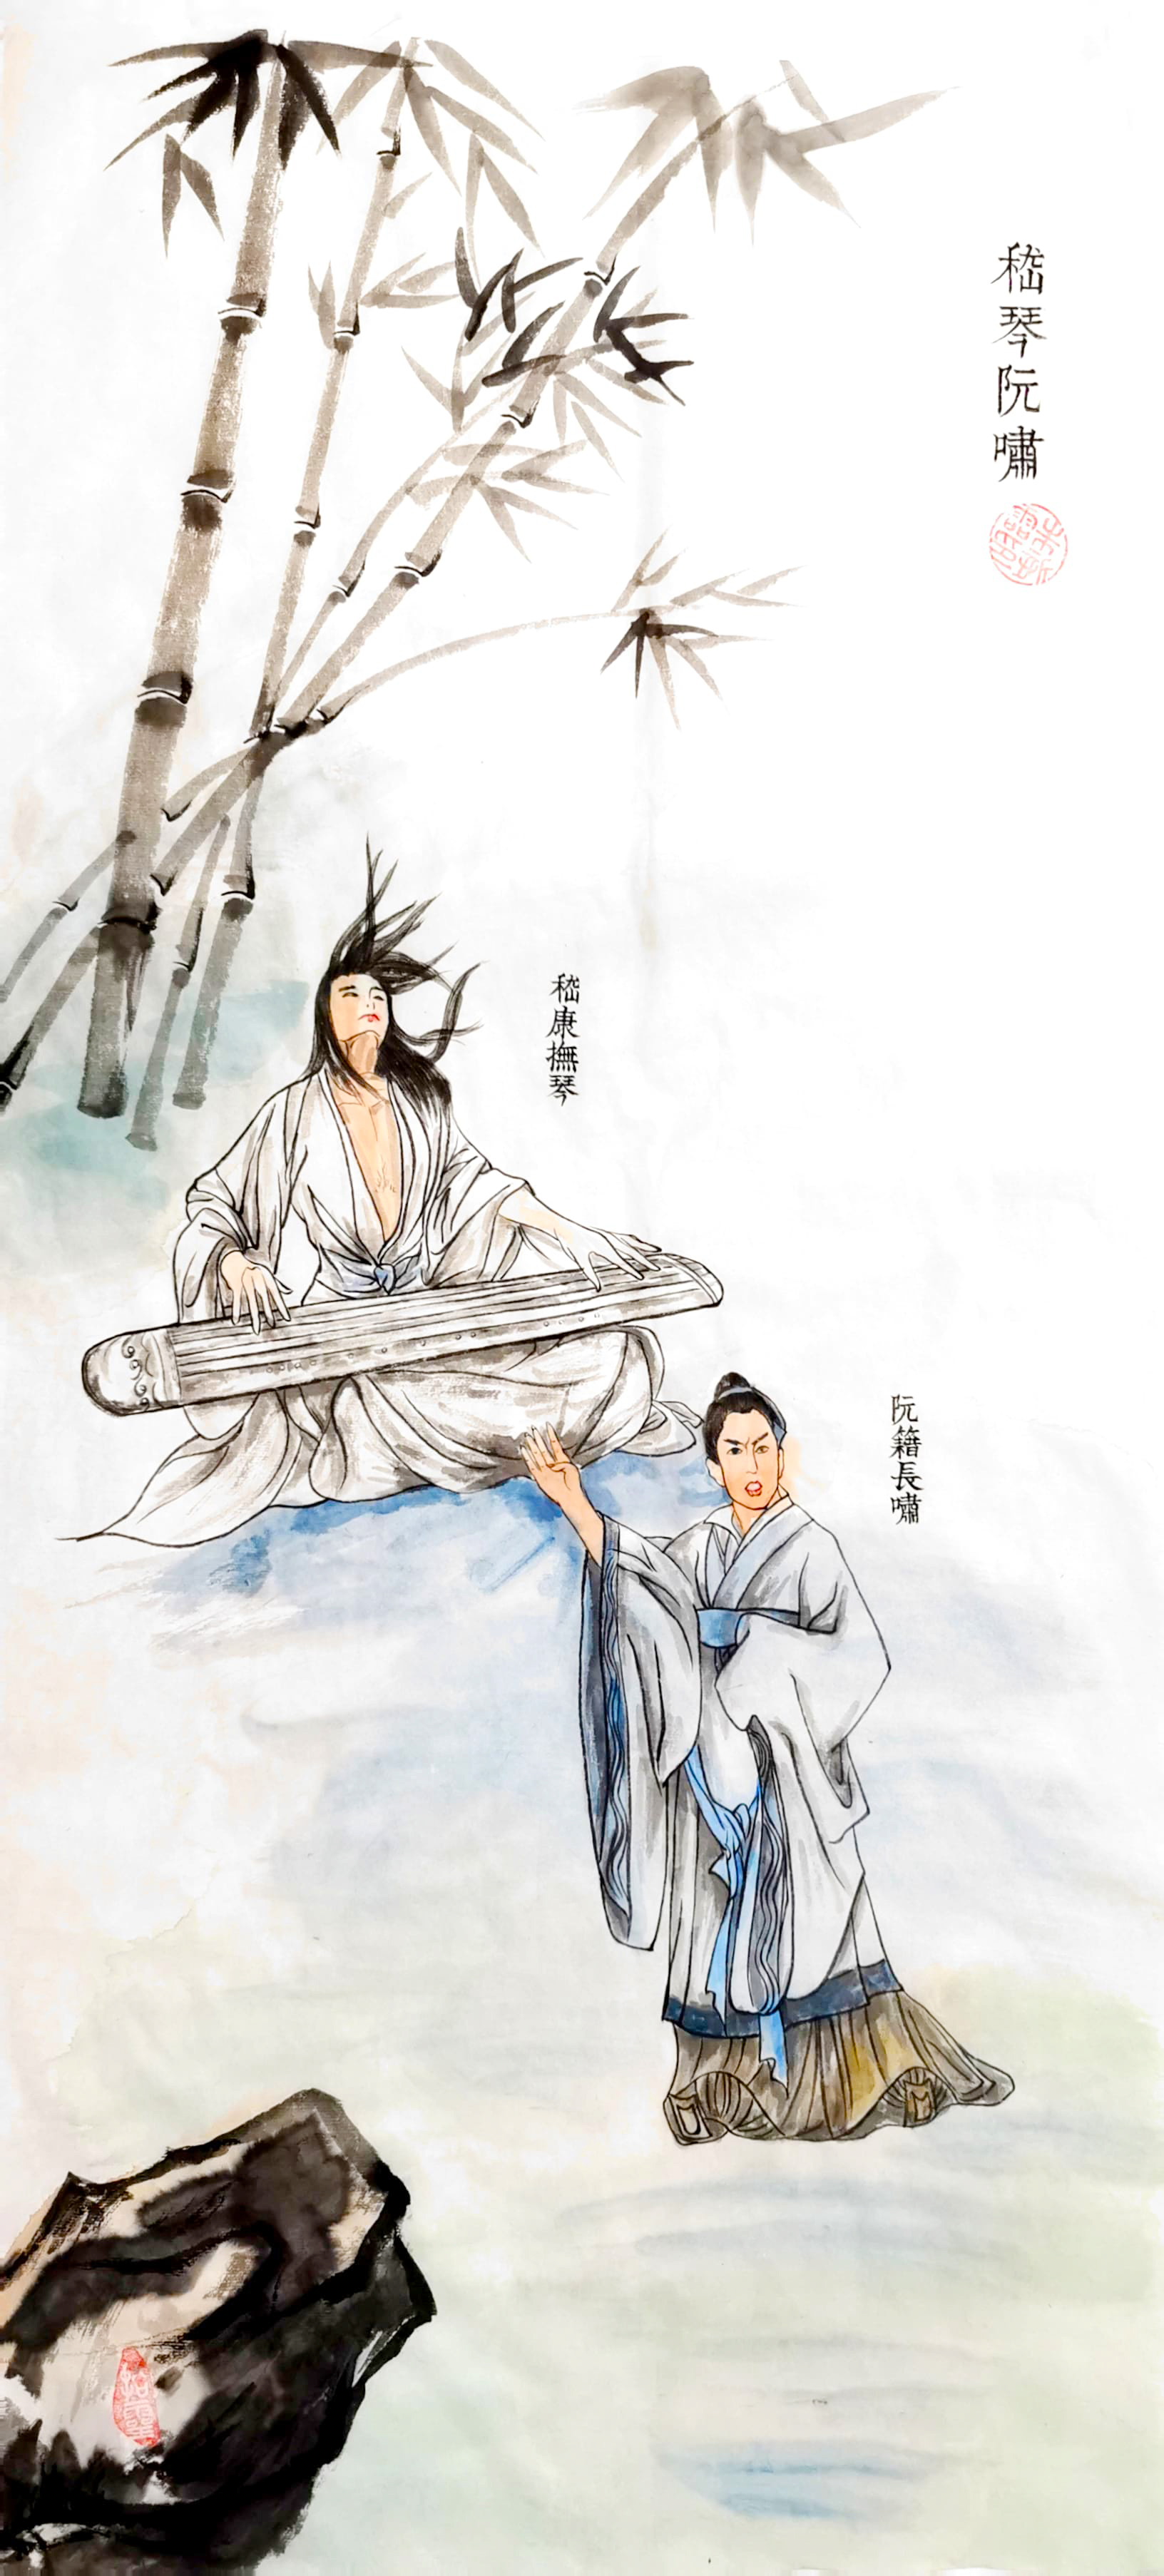 《飞龙在天 浓情端午》海内外华人艺术家共庆佳节书画展(图254)